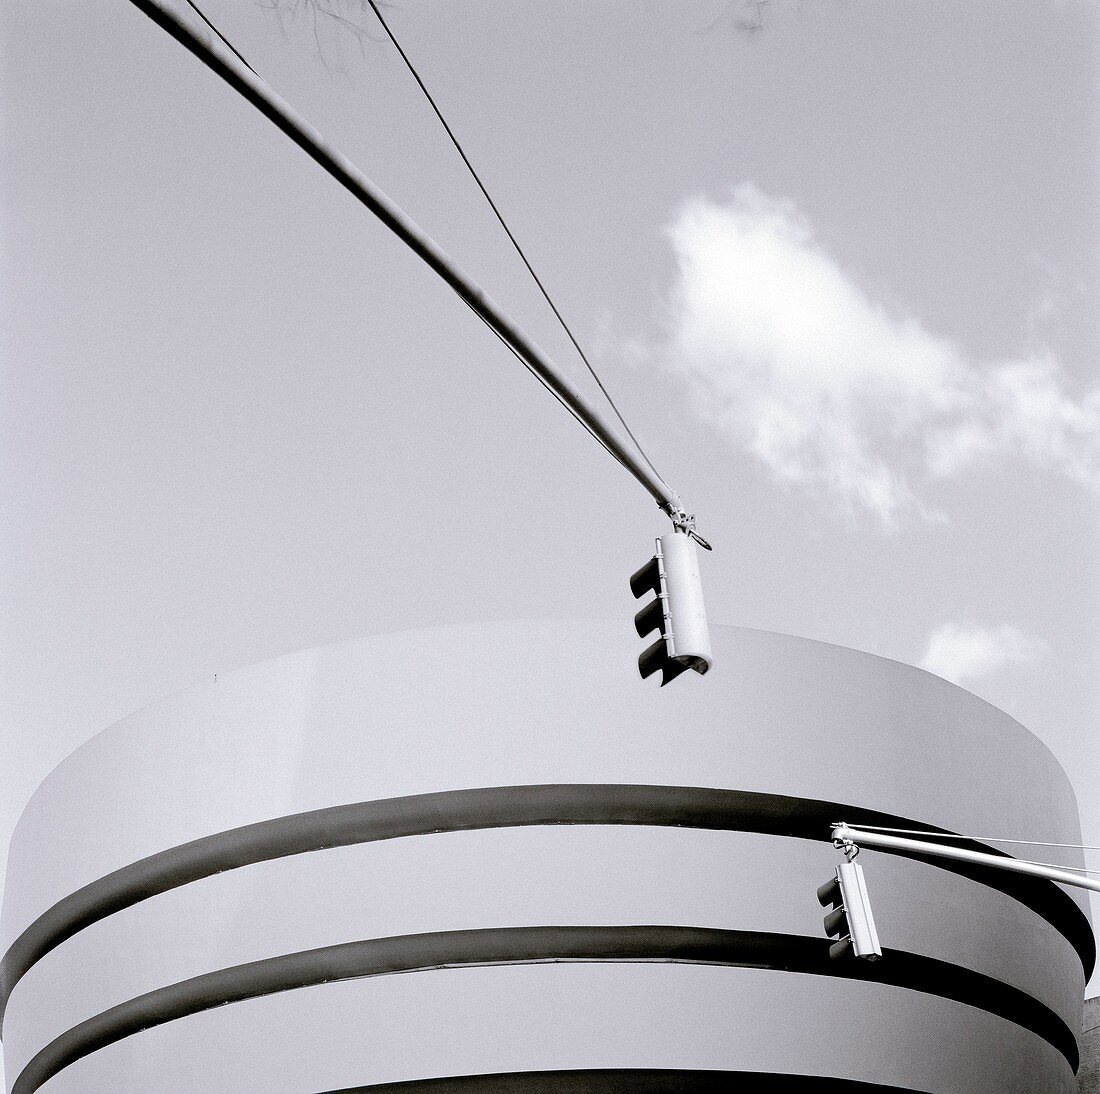 Guggenheim Museum, New York, USA